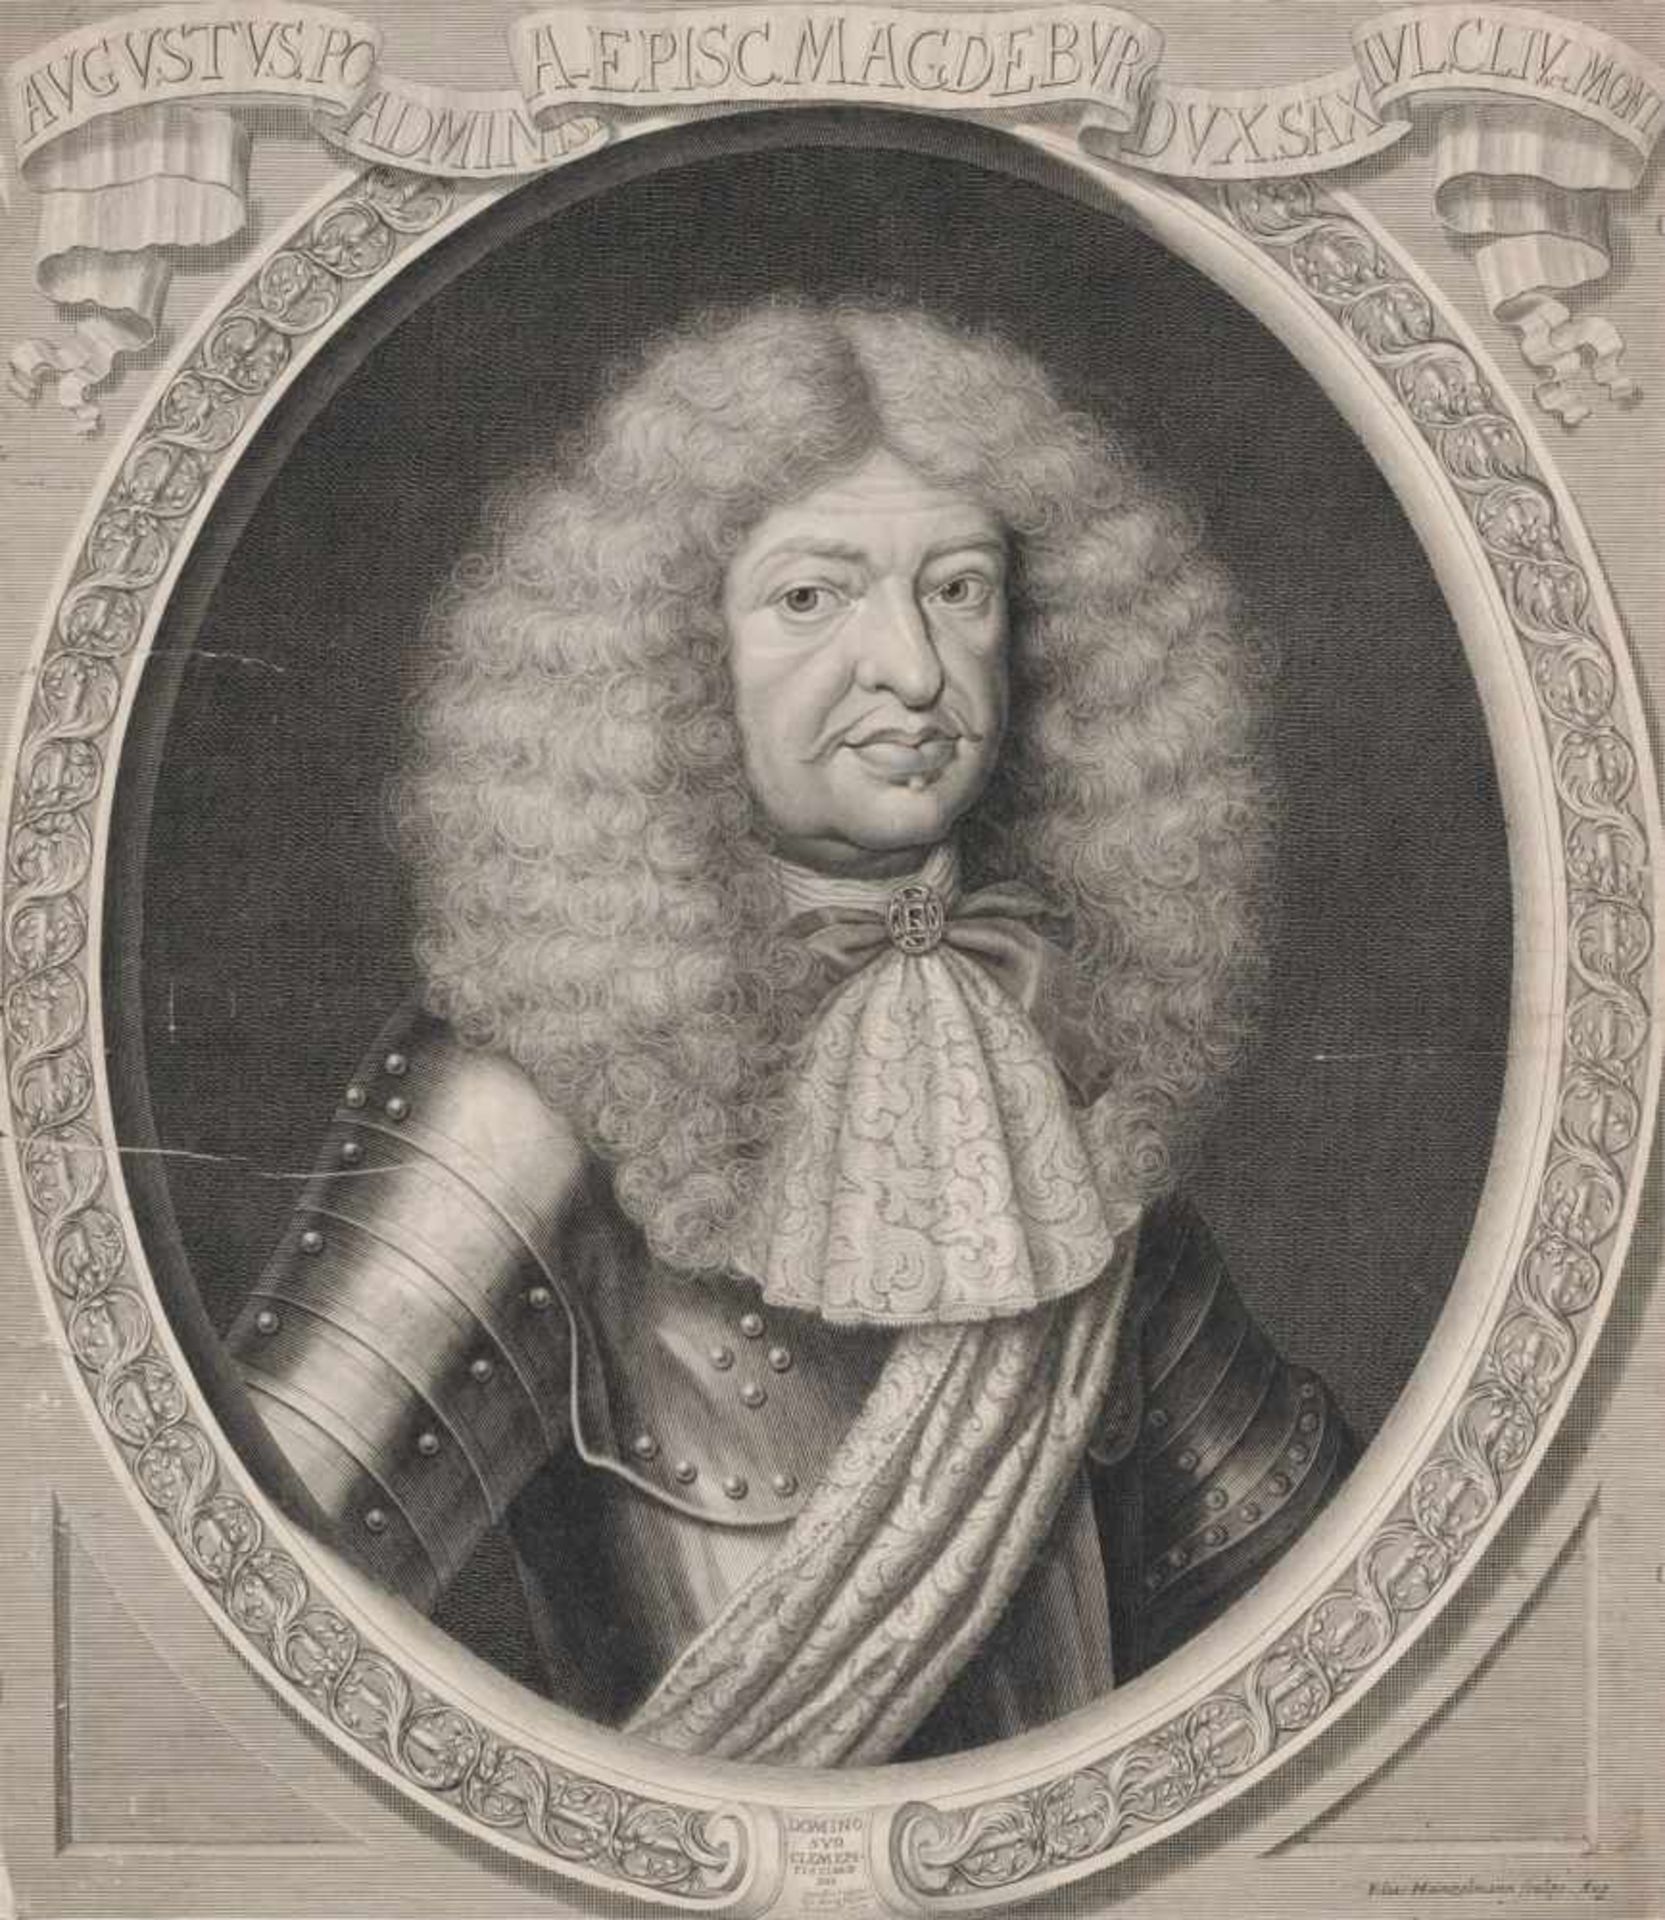 Elias Hainzelmann, Drei Porträts sächsischer Würdenträger. Spätes 17. Jh.Elias Hainzelmann 1640